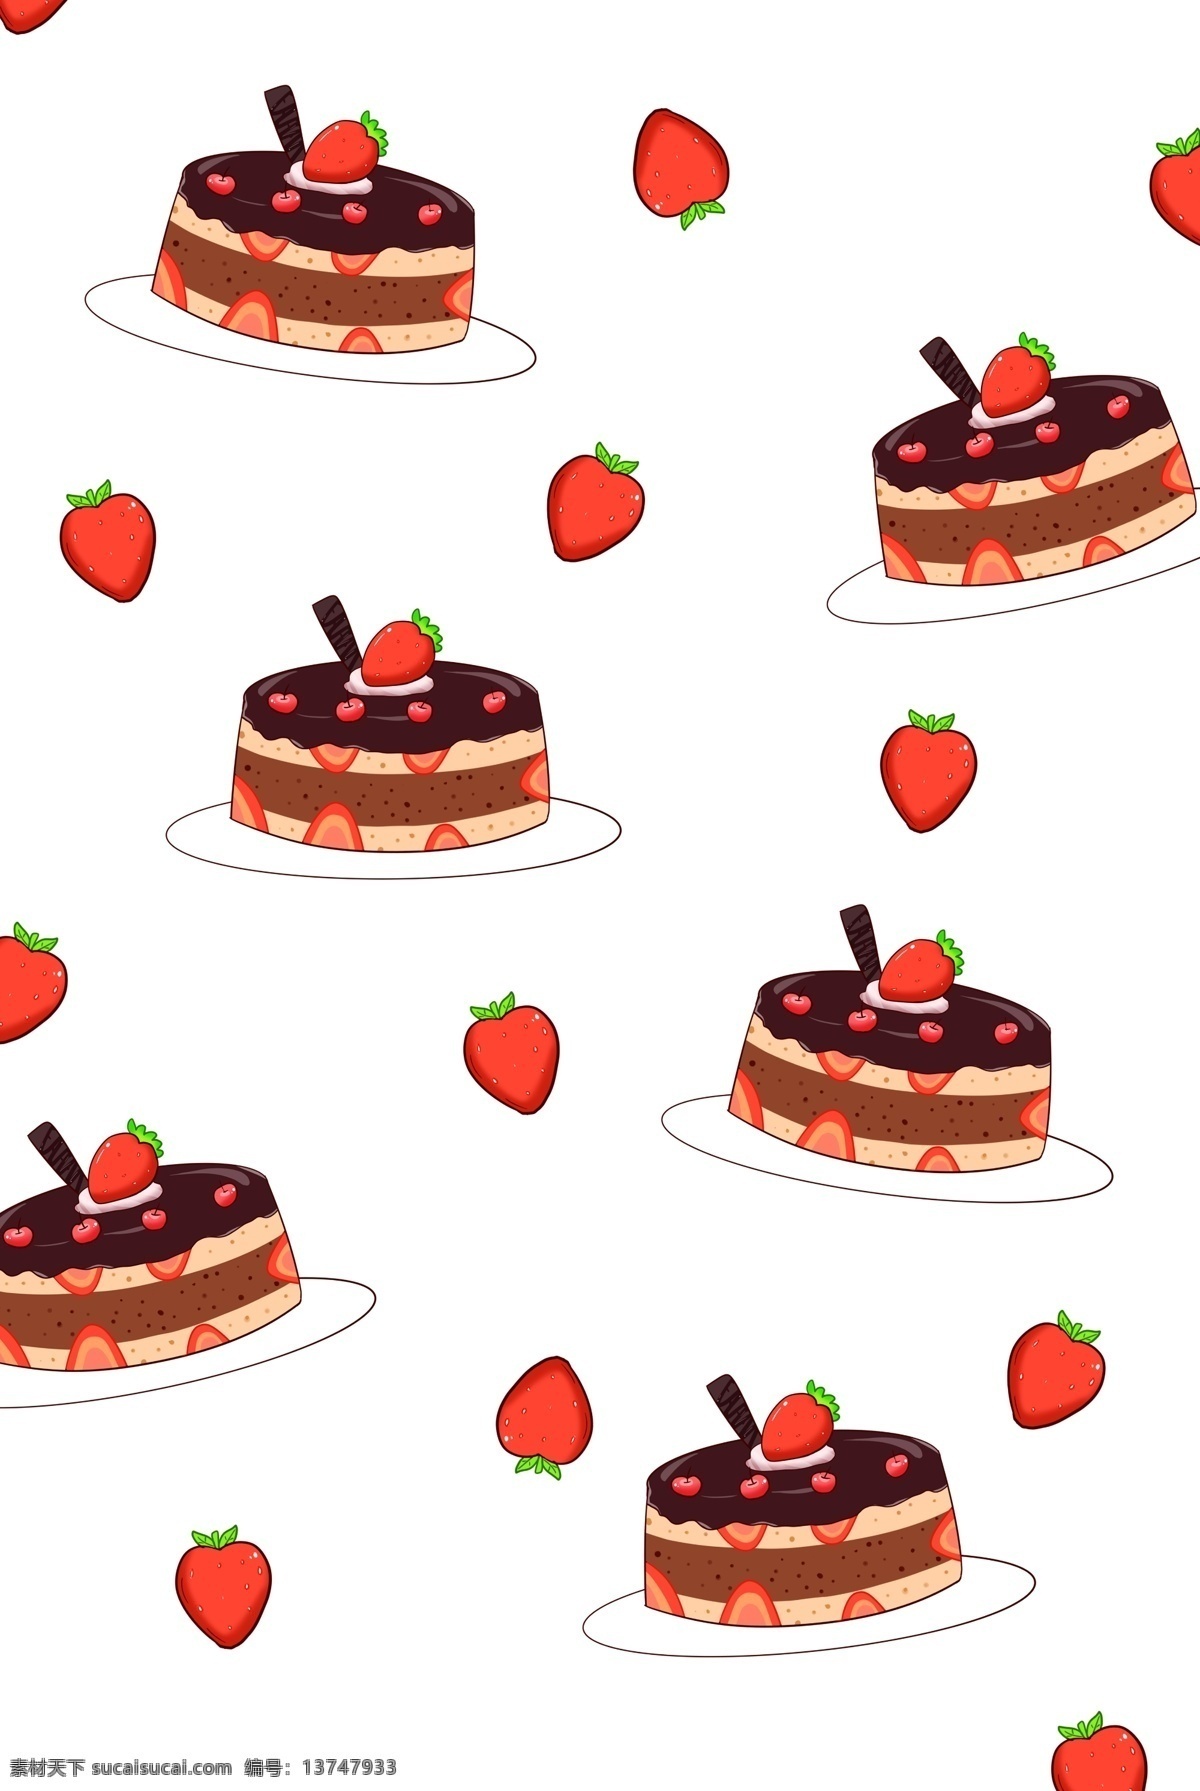 圆形 蛋糕 底纹 插画 圆形蛋糕底纹 水果蛋糕底纹 草莓蛋糕底纹 漂亮 创意蛋糕底纹 漂浮